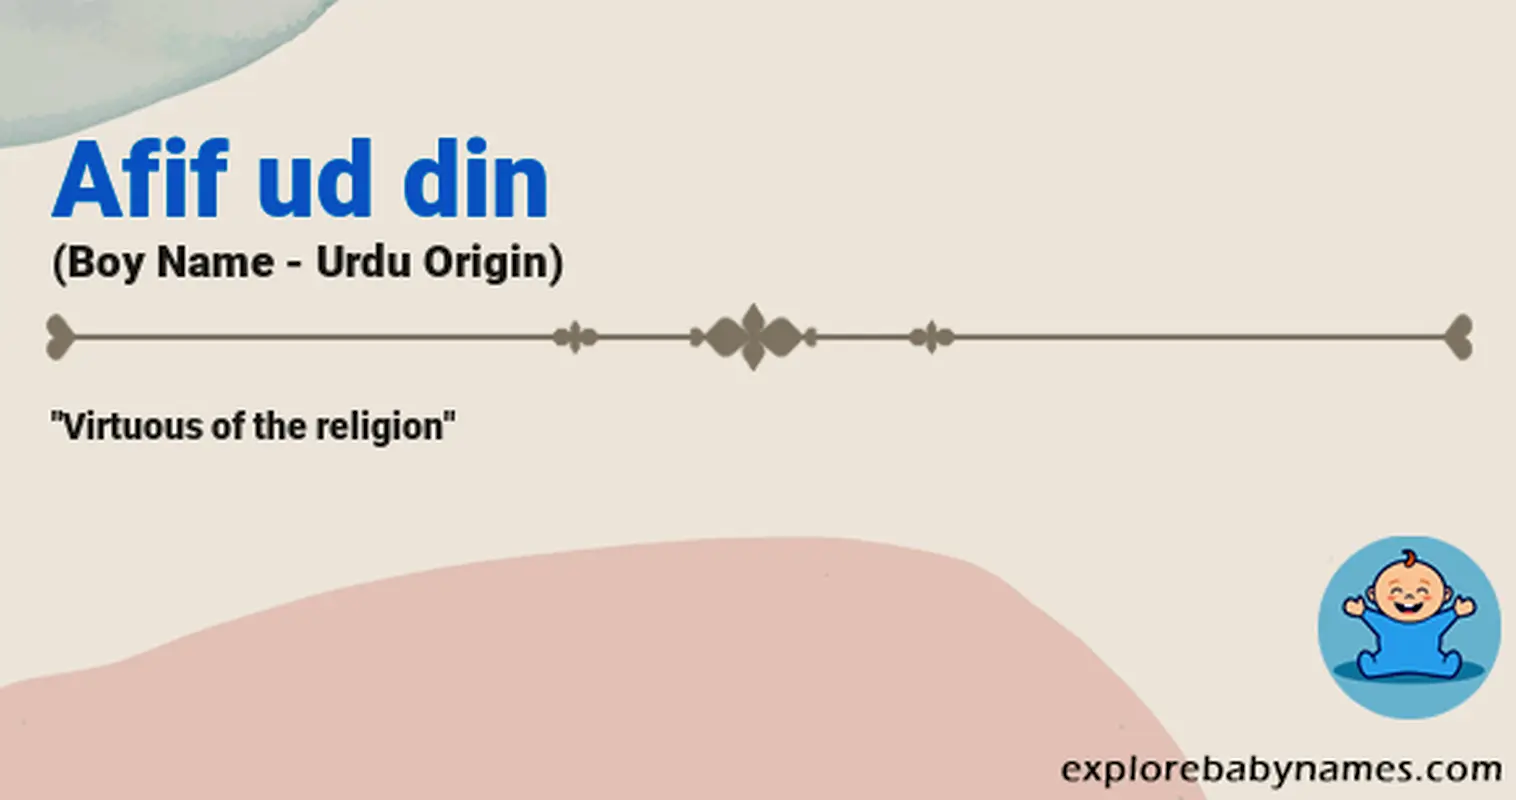 Meaning of Afif ud din